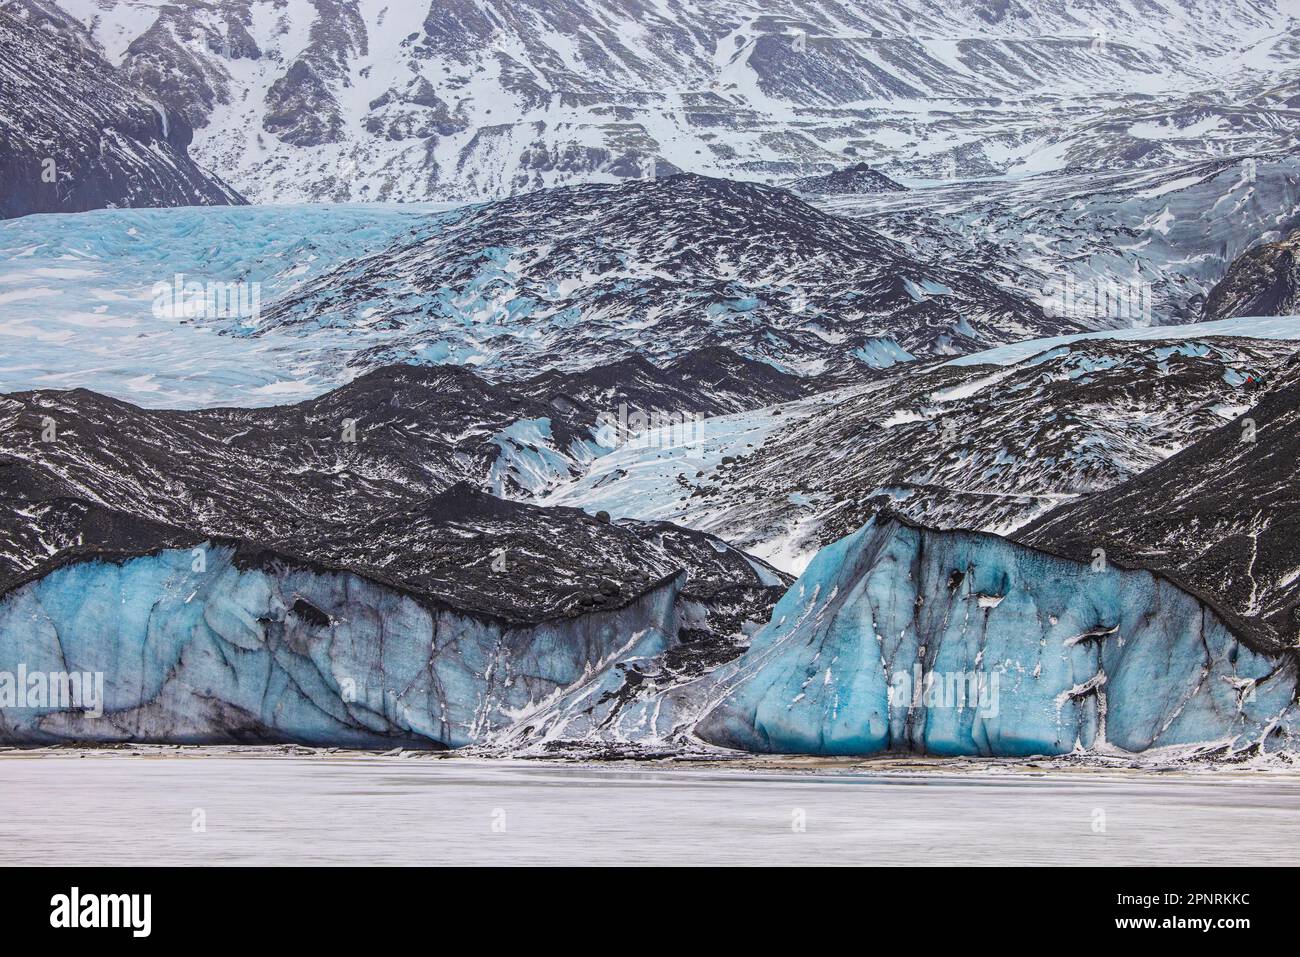 Ghiacciaio Falljökull / Falljoekull in Austurland parte di Vatnajökull, il più grande cappuccio di ghiaccio in Islanda diventa nero a causa delle deposizioni di carbonio e fuliggine Foto Stock